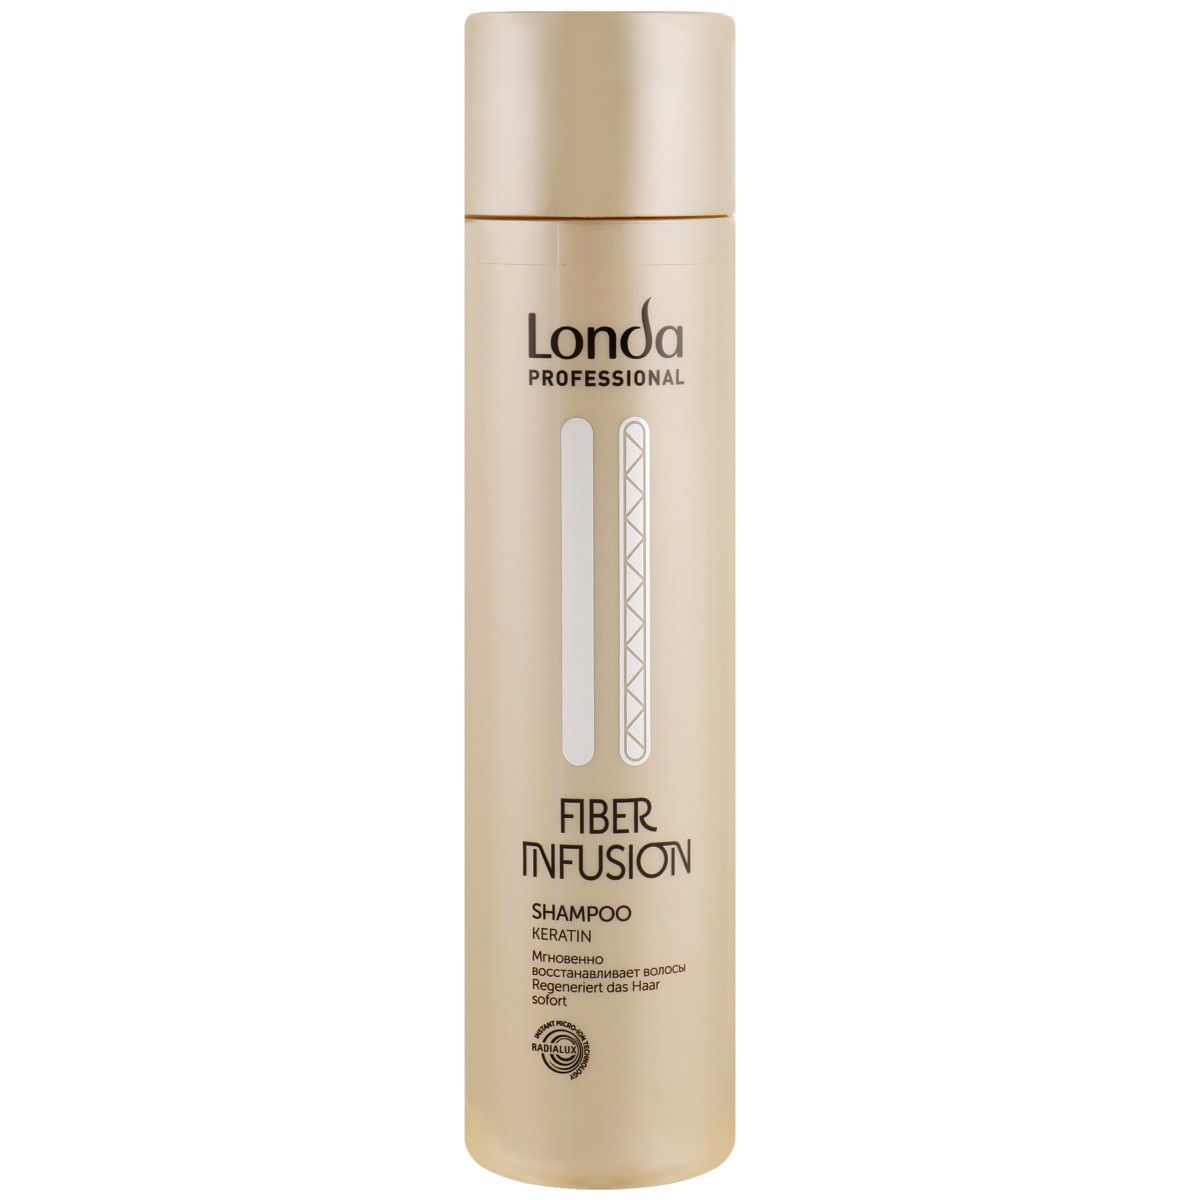 Londa Fiber Infusion - regenerujący szampon do włosów, 250ml